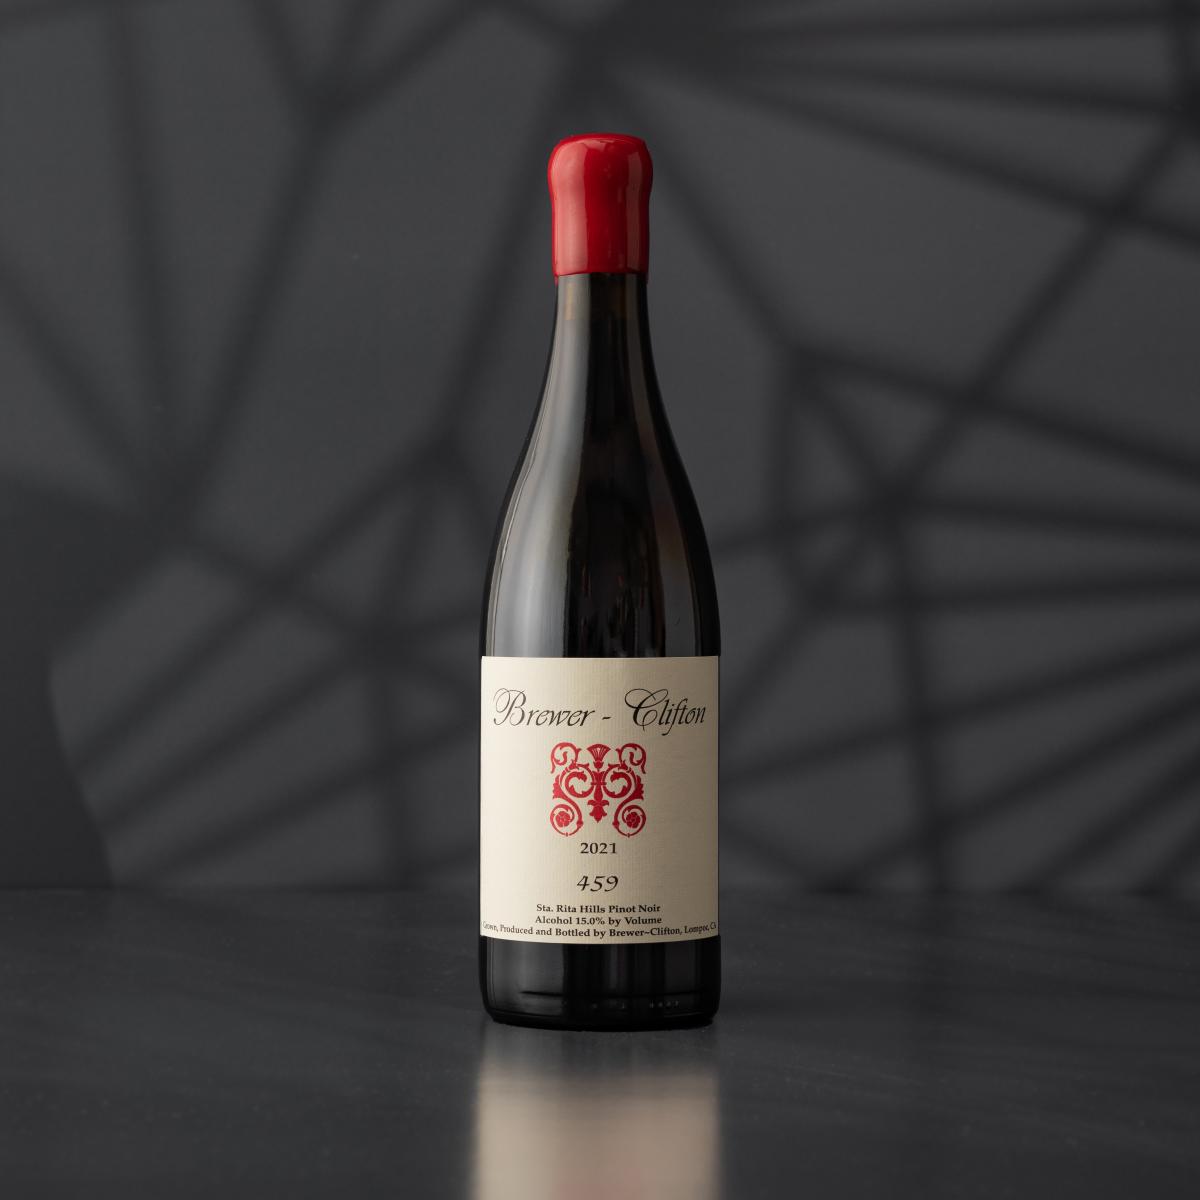 Brewer-Clifton 459 Pinot Noir 